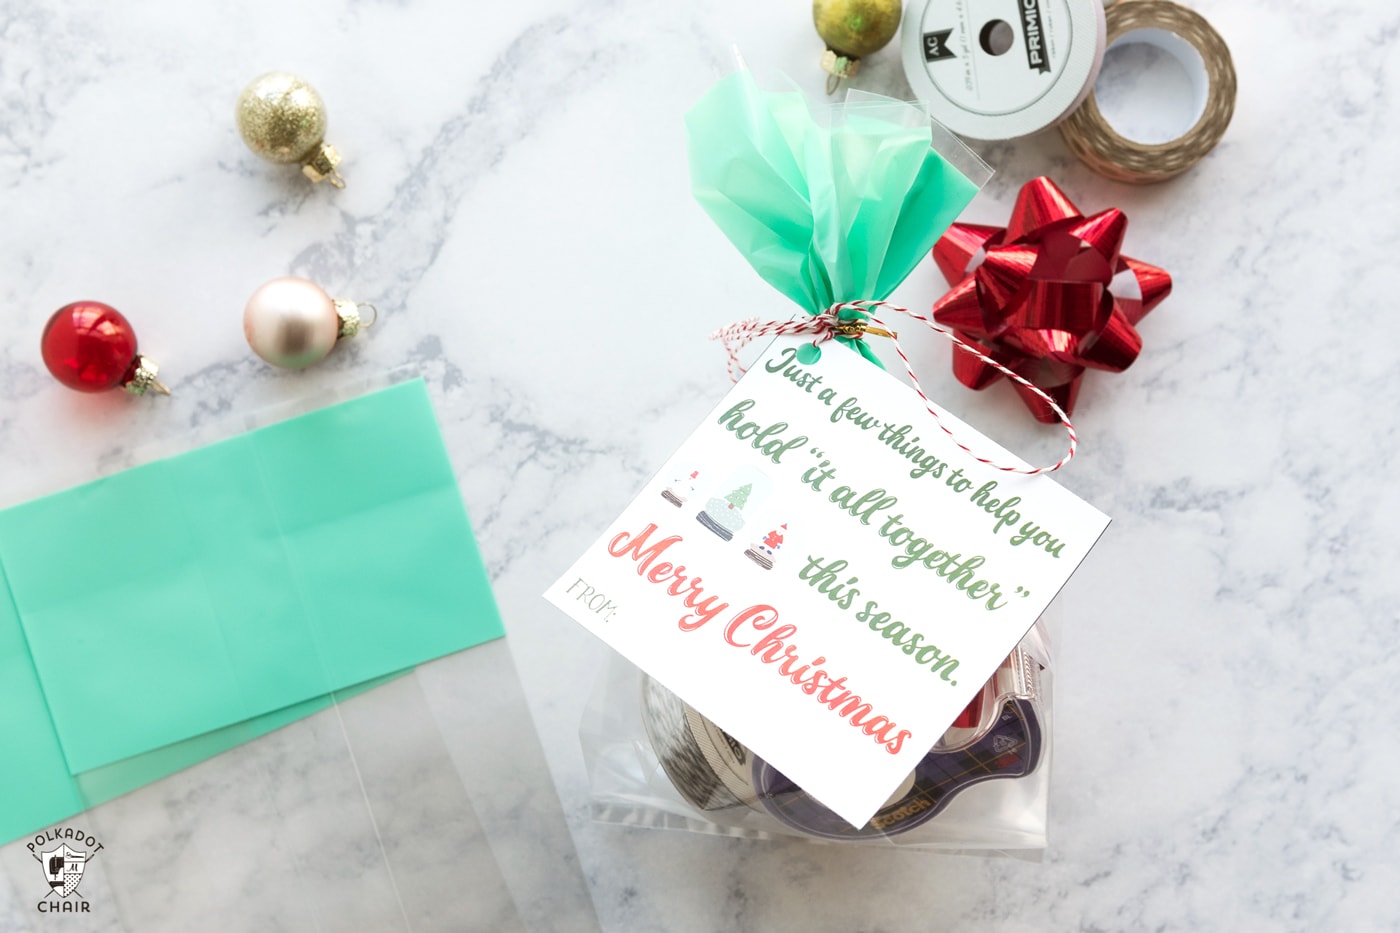 25 Neighbor Gift Ideas with Free Printable Tags - unOriginal Mom